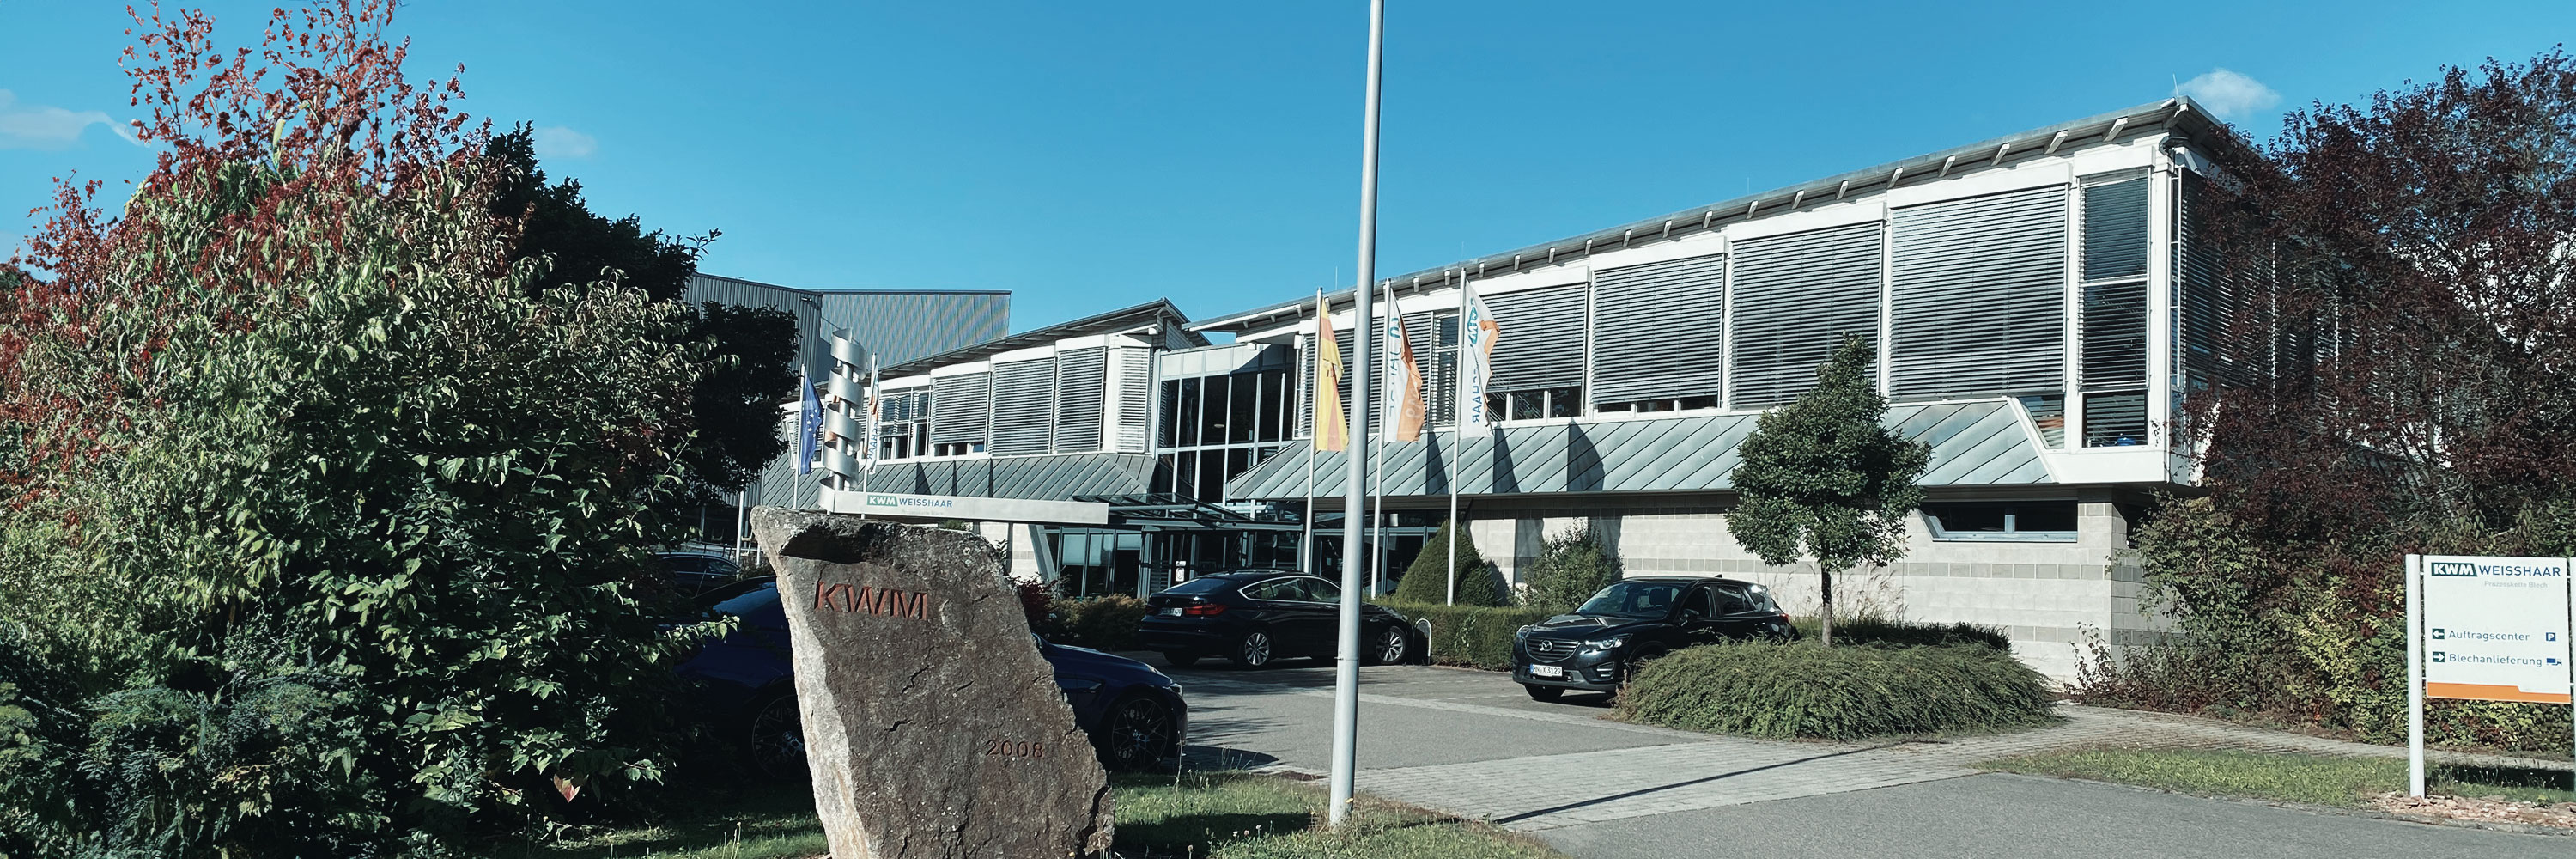 KWM Weisshaar bildet nicht nur aus, sondern bietet auch Praktikumsplätze zum reinschnuppern. | Mosbach, Baden-Württemberg